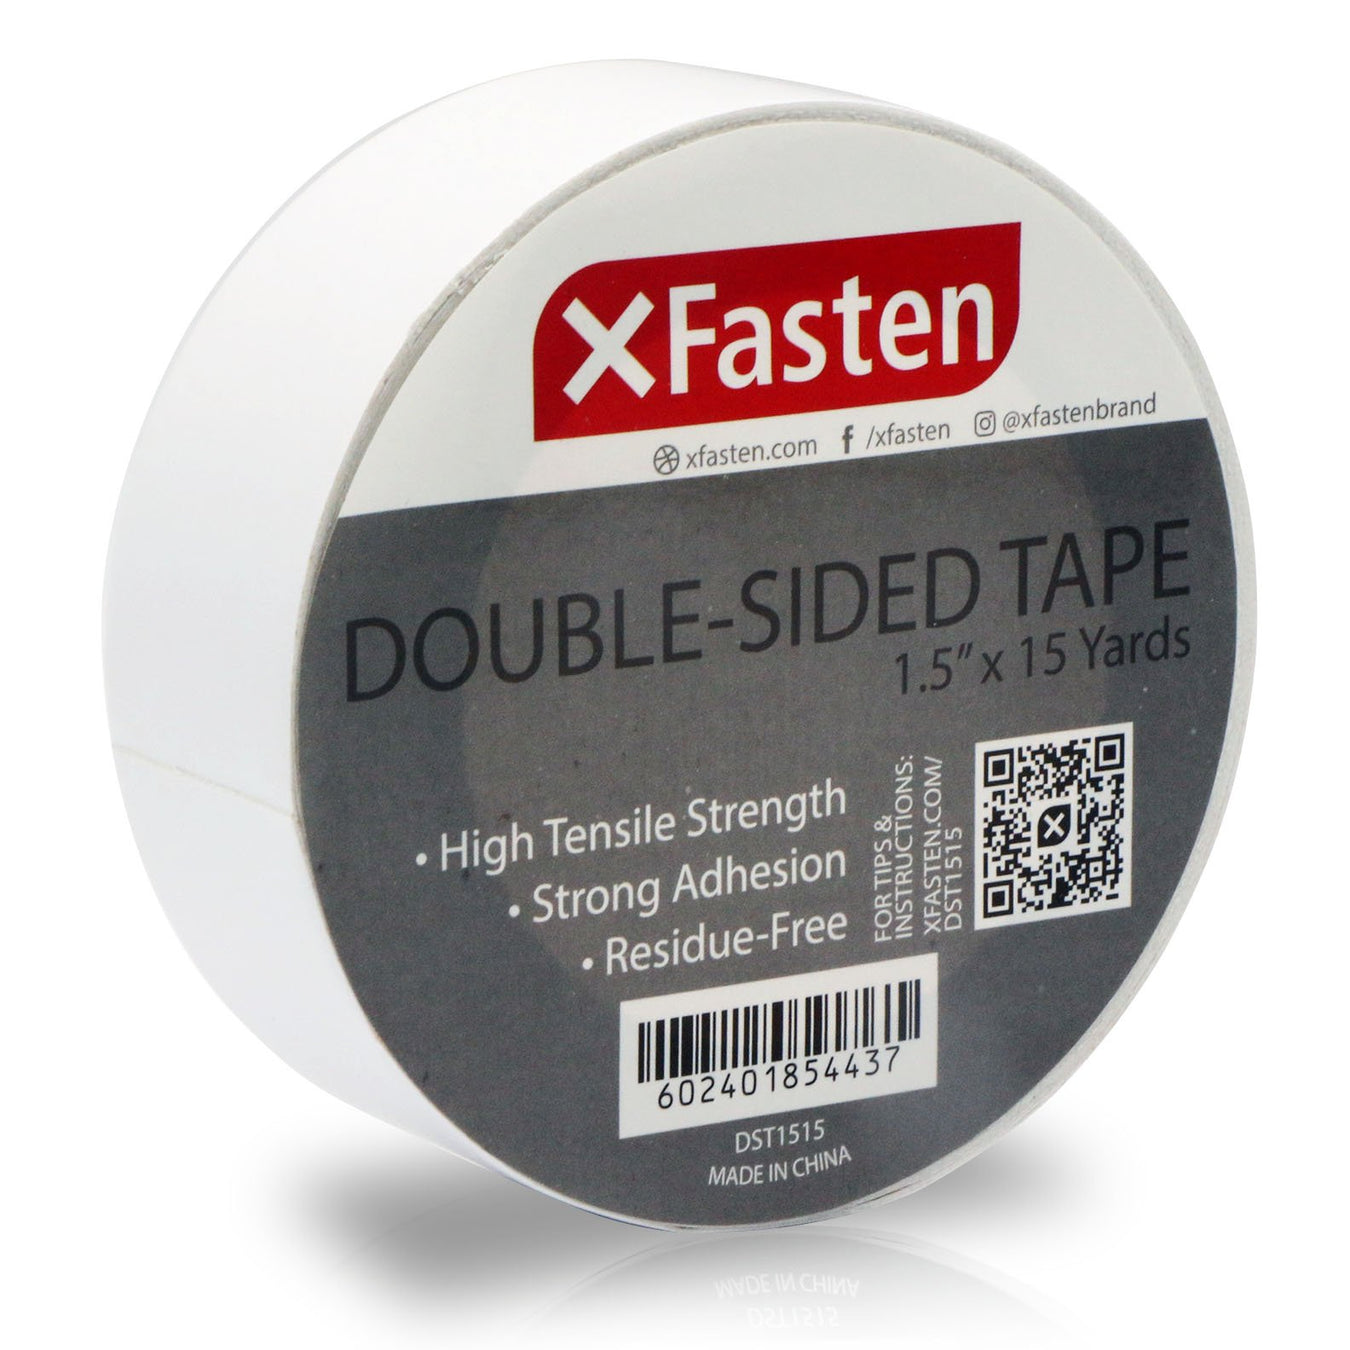 Double Sided Tape - XFasten